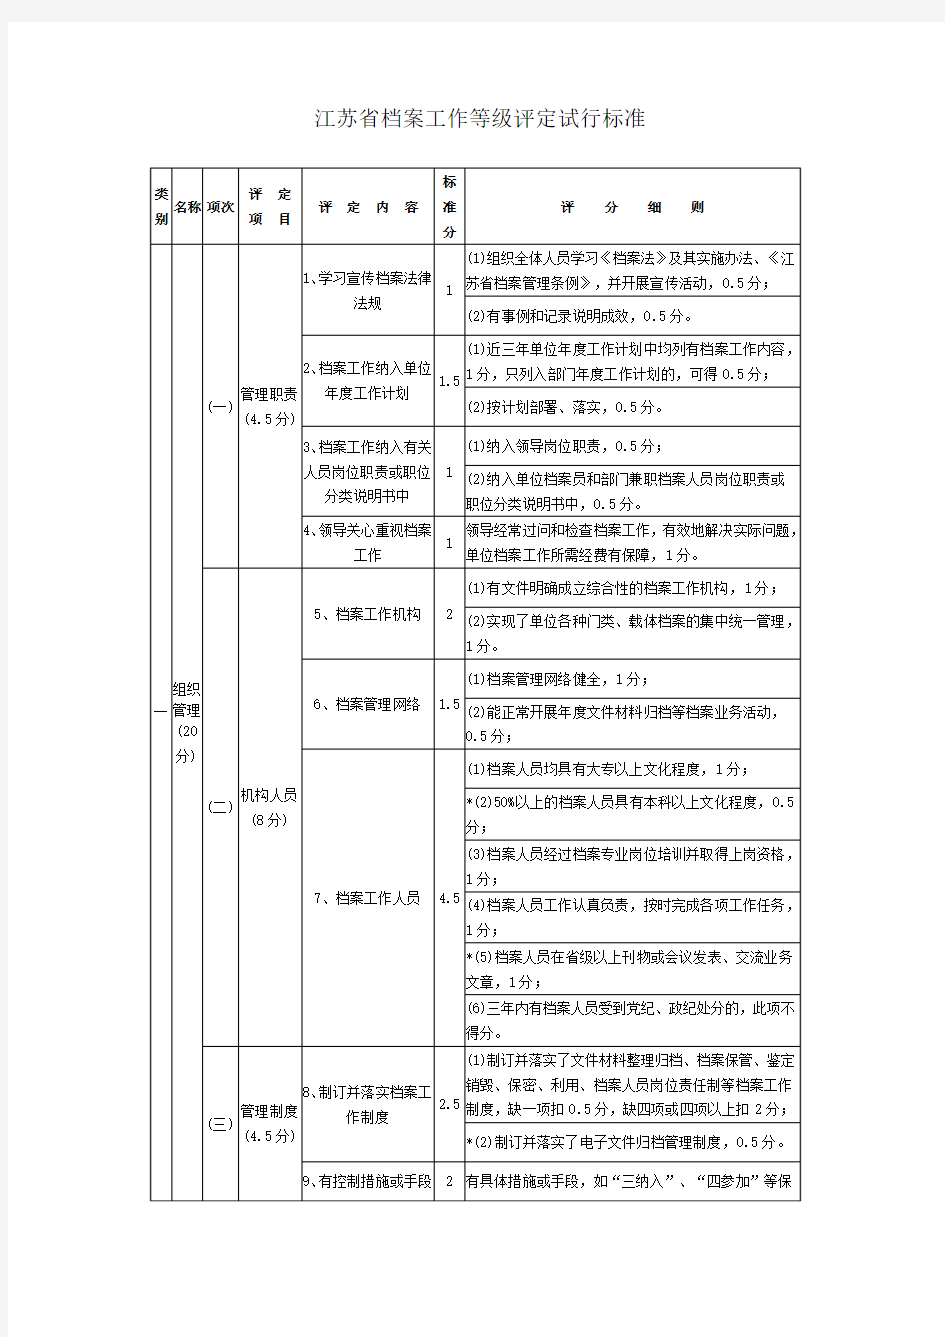 江苏省档案工作等级评定试行标准